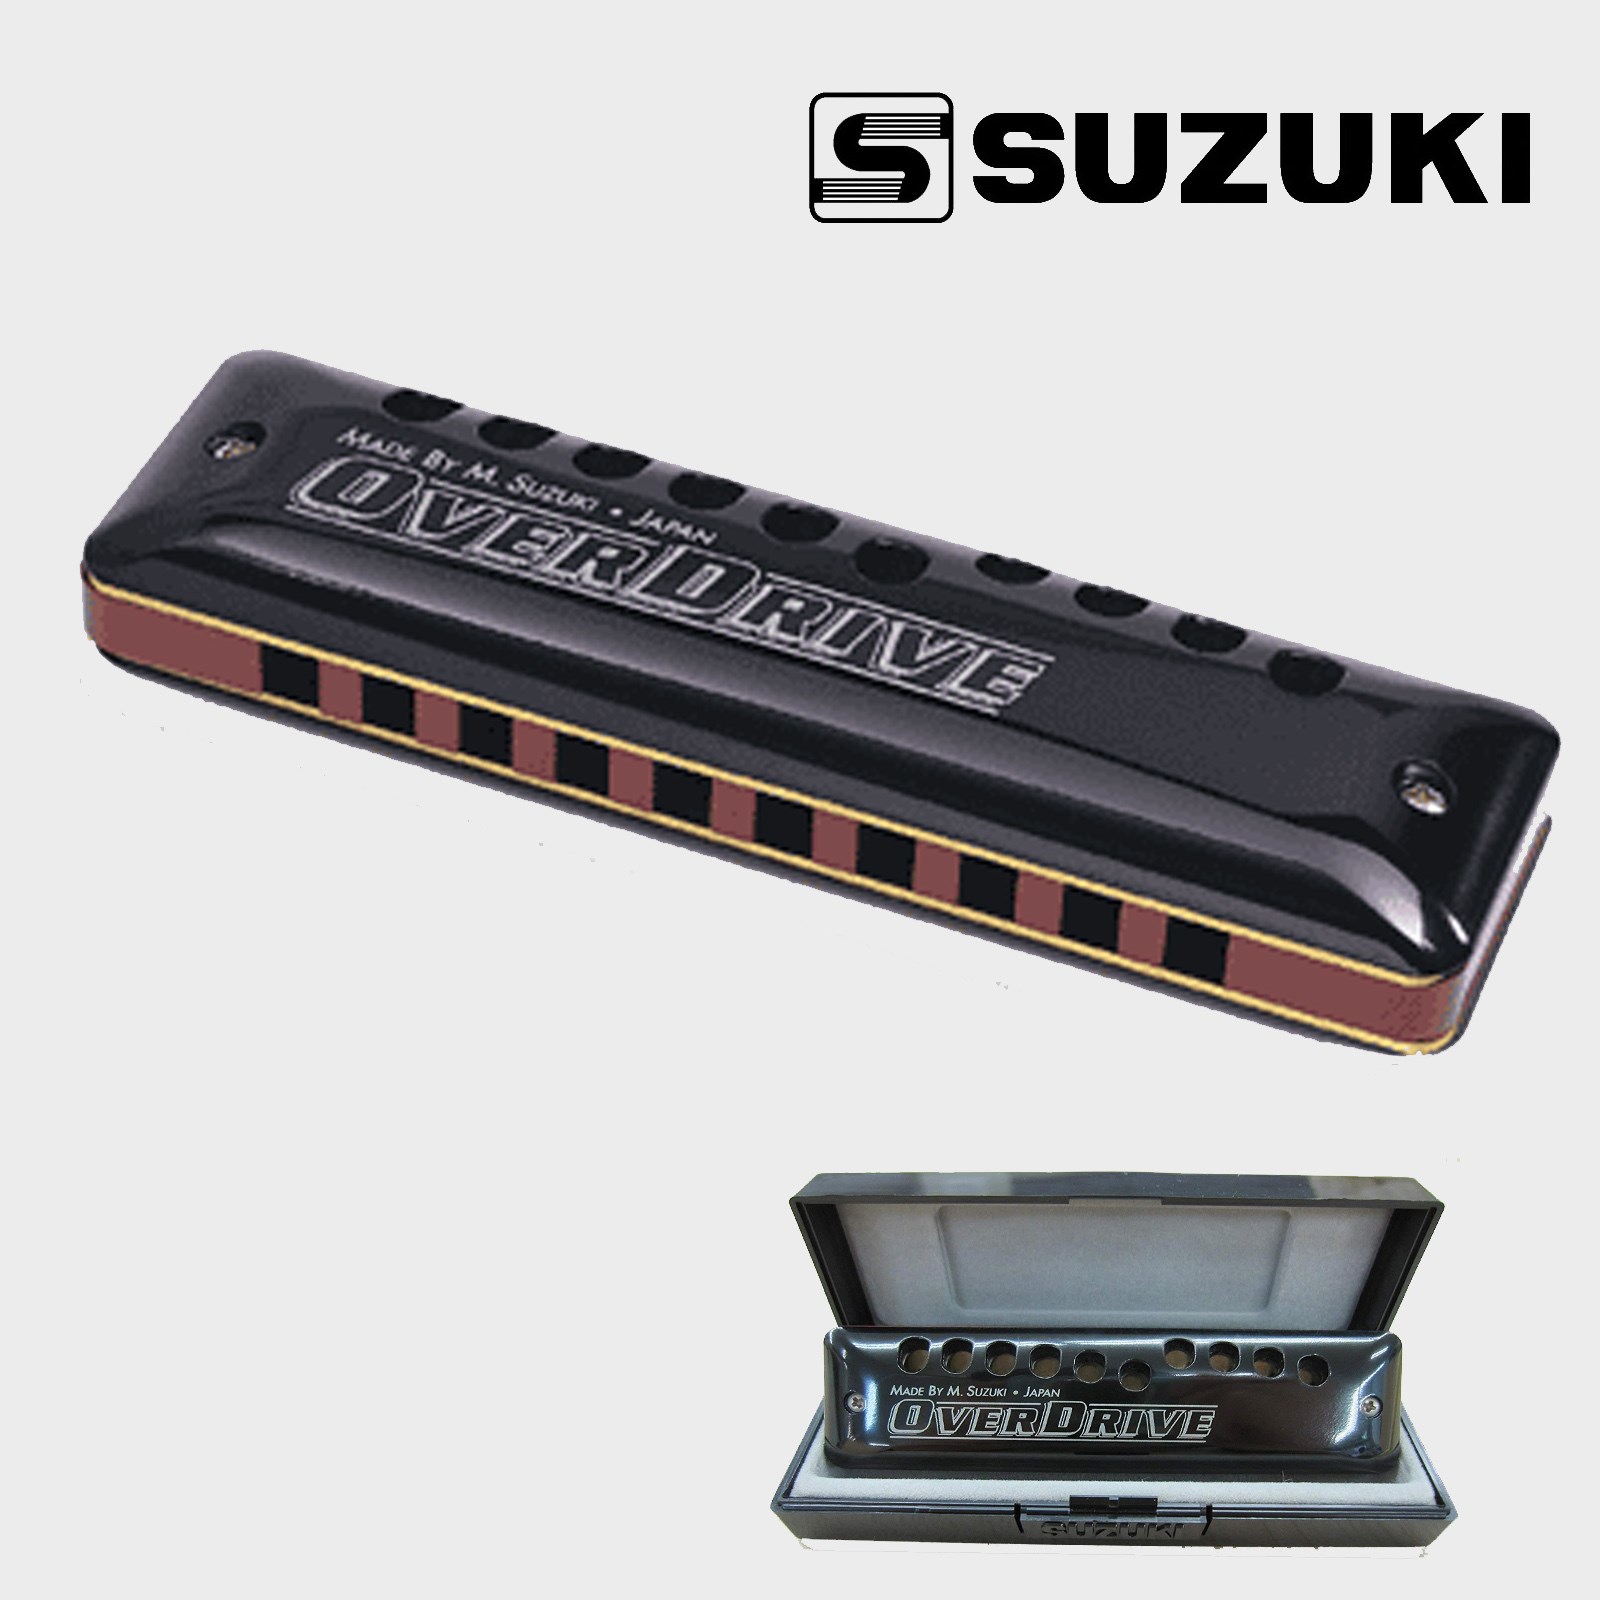 Suzuki Overdrive key of G